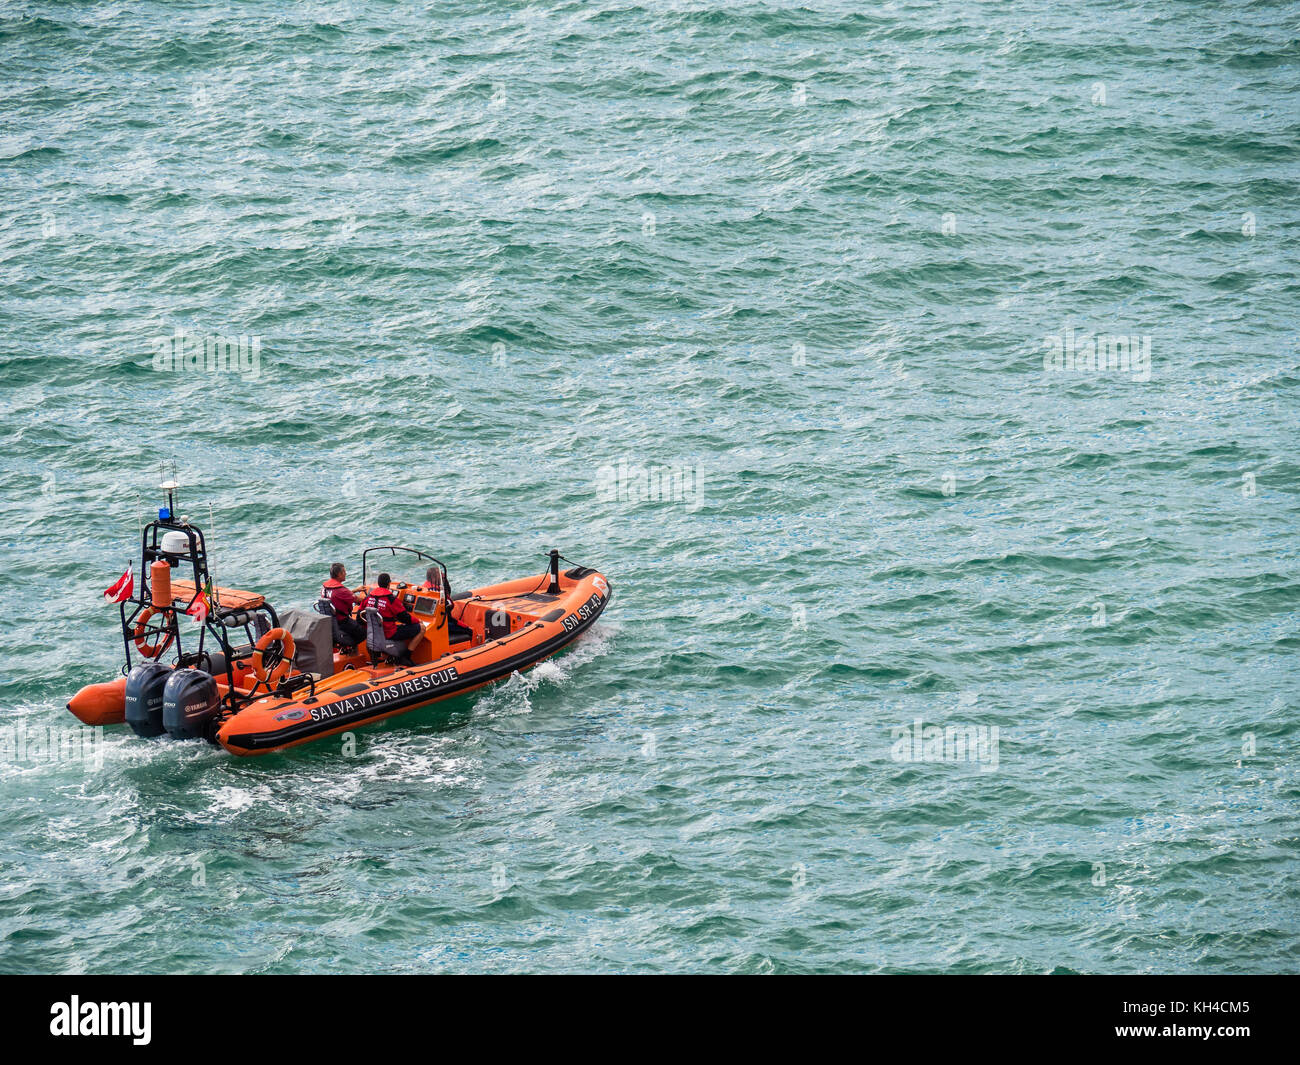 Carvoeiro, Portugal - Oktober 20, 2017: rettungsboot Patrouillen in der Nähe von Carvoeiro an der südlichen Atlantikküste Portugals. Stockfoto